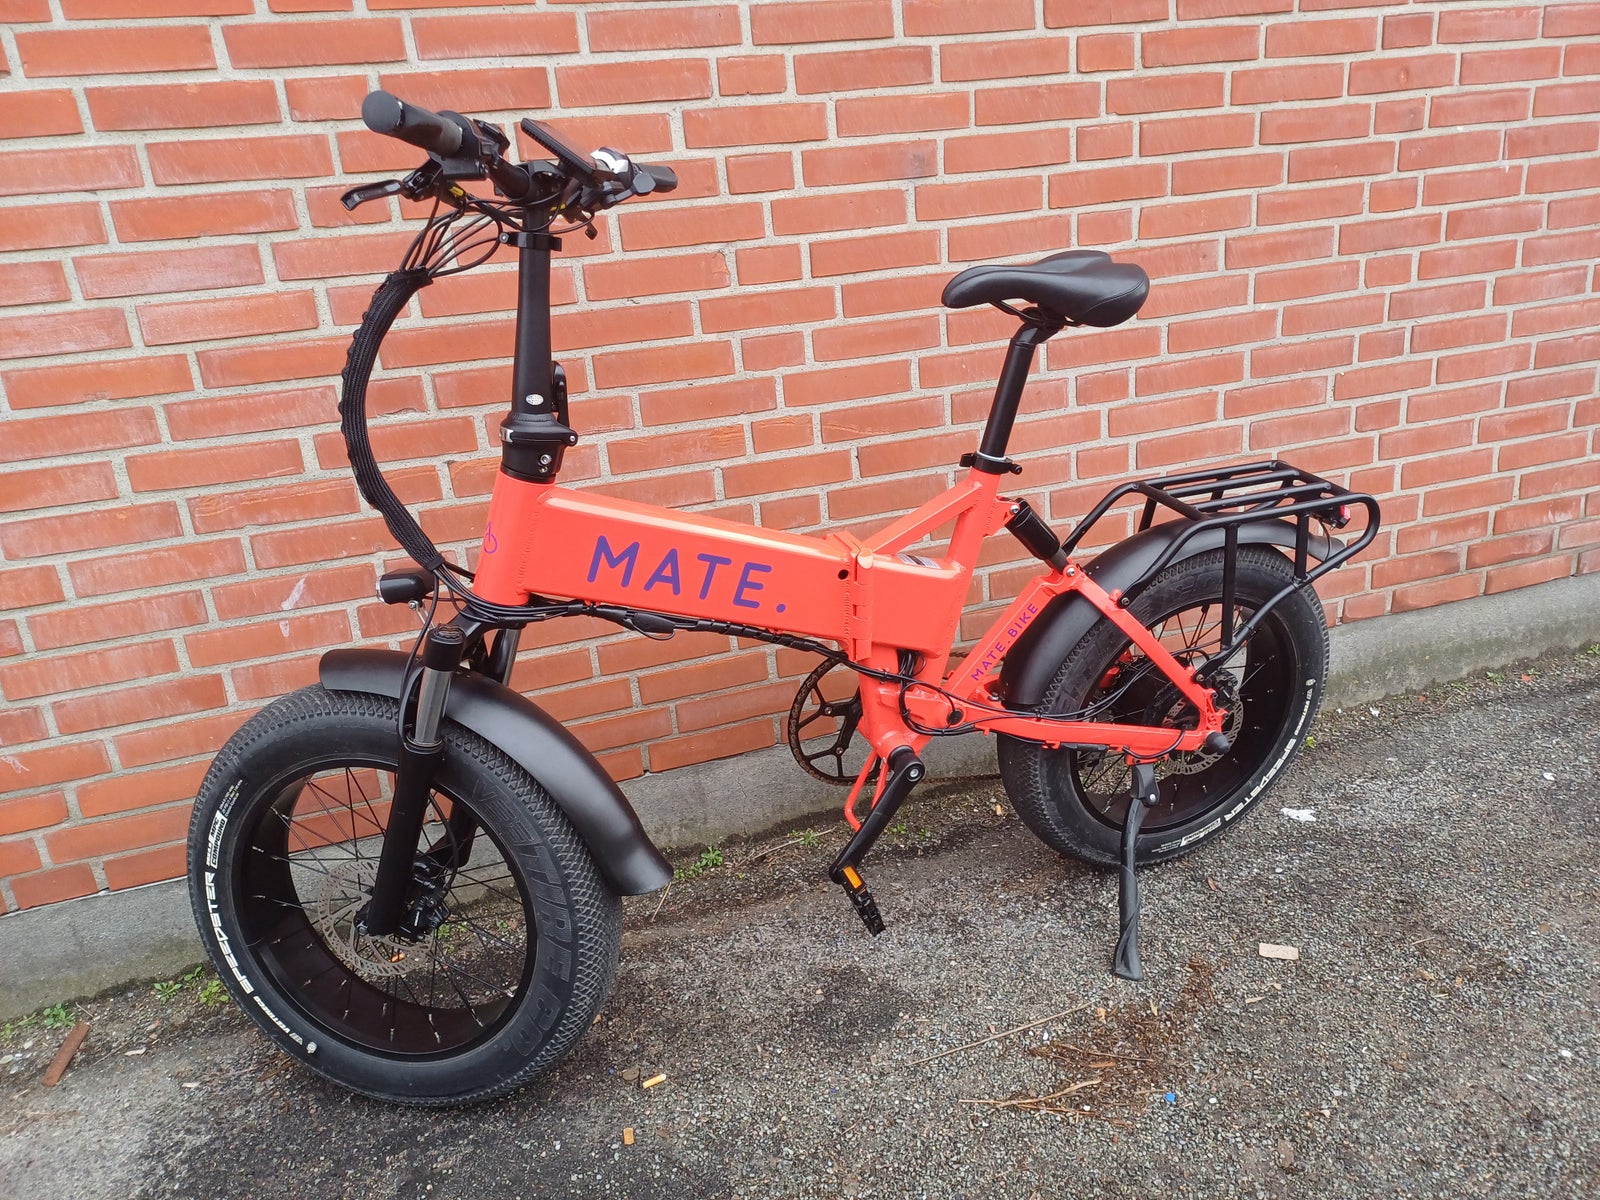 Mate X 750 watt Demo cykel